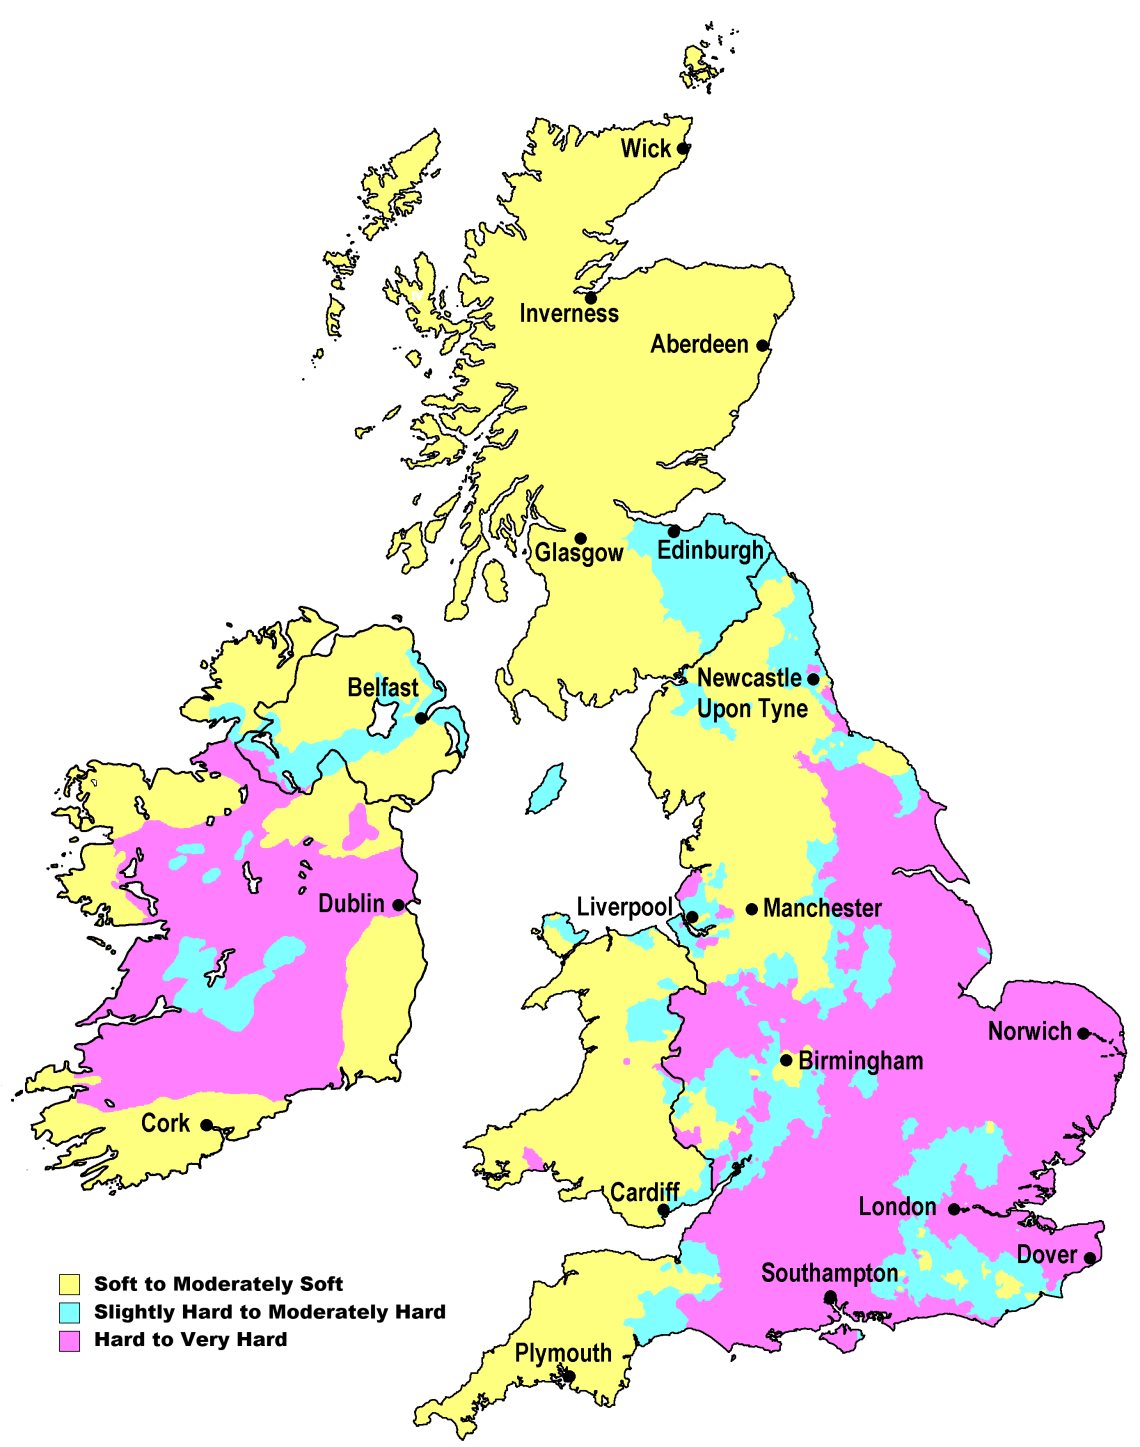 water-hardness-map-of-uk.jpg